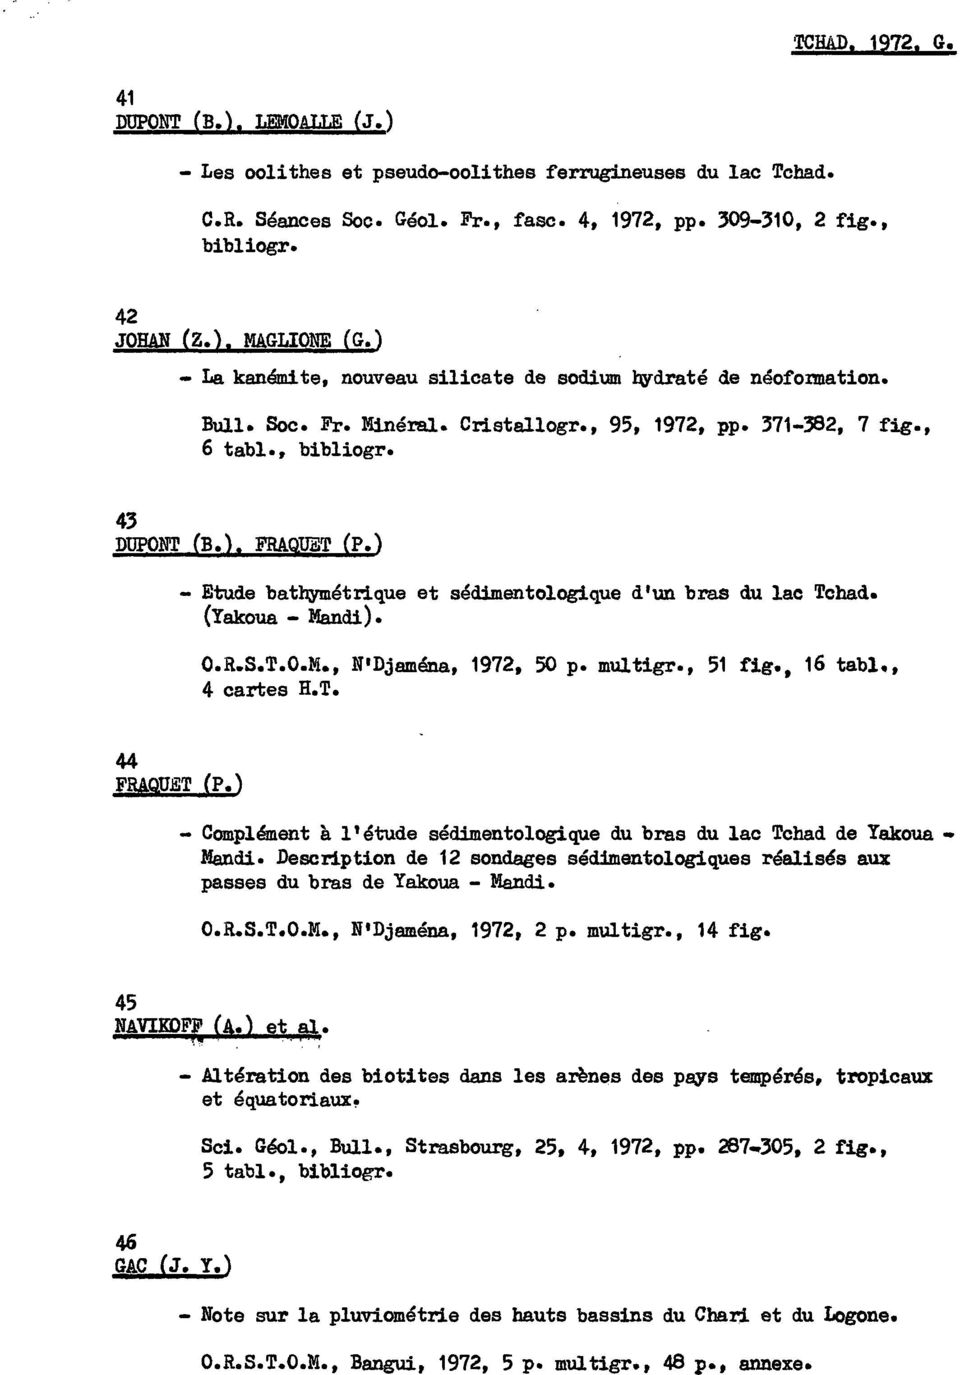 ) - Etude bath;ymétrique et sédimentologique d'un bras du lac Tchad. (Yakoua - Mandi). O.R.S.T.O.M., N'Djaména, 1972, 50 p. multigr., 51 4 cartes R.T. fig., 16 tabl., 44 FRAQUET (P.